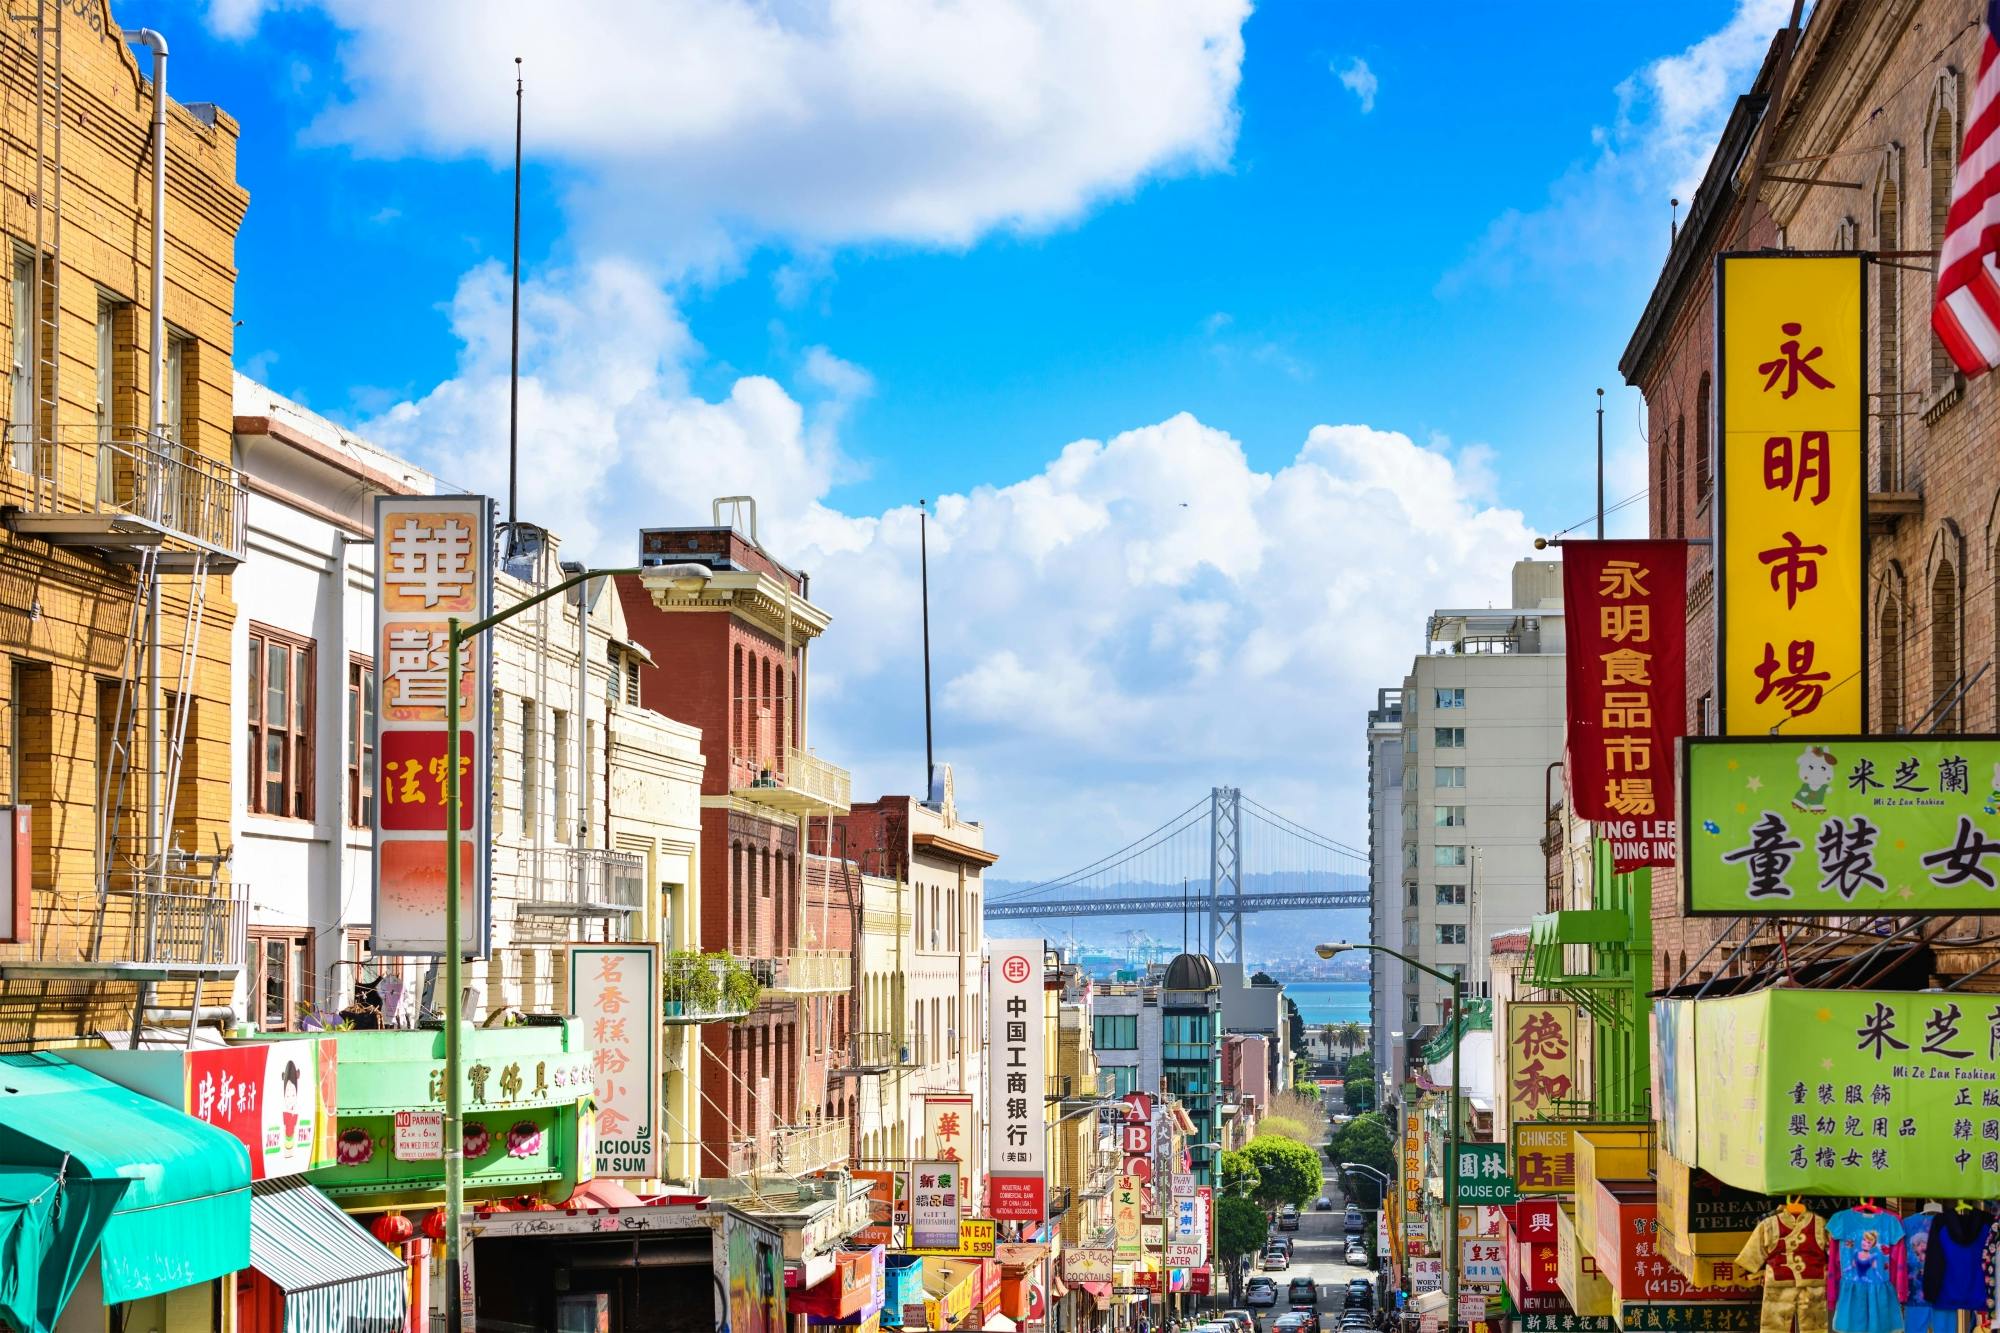 Zwiedzaj Chinatown w San Francisco w grze eksploracyjnej The Warrior Cat